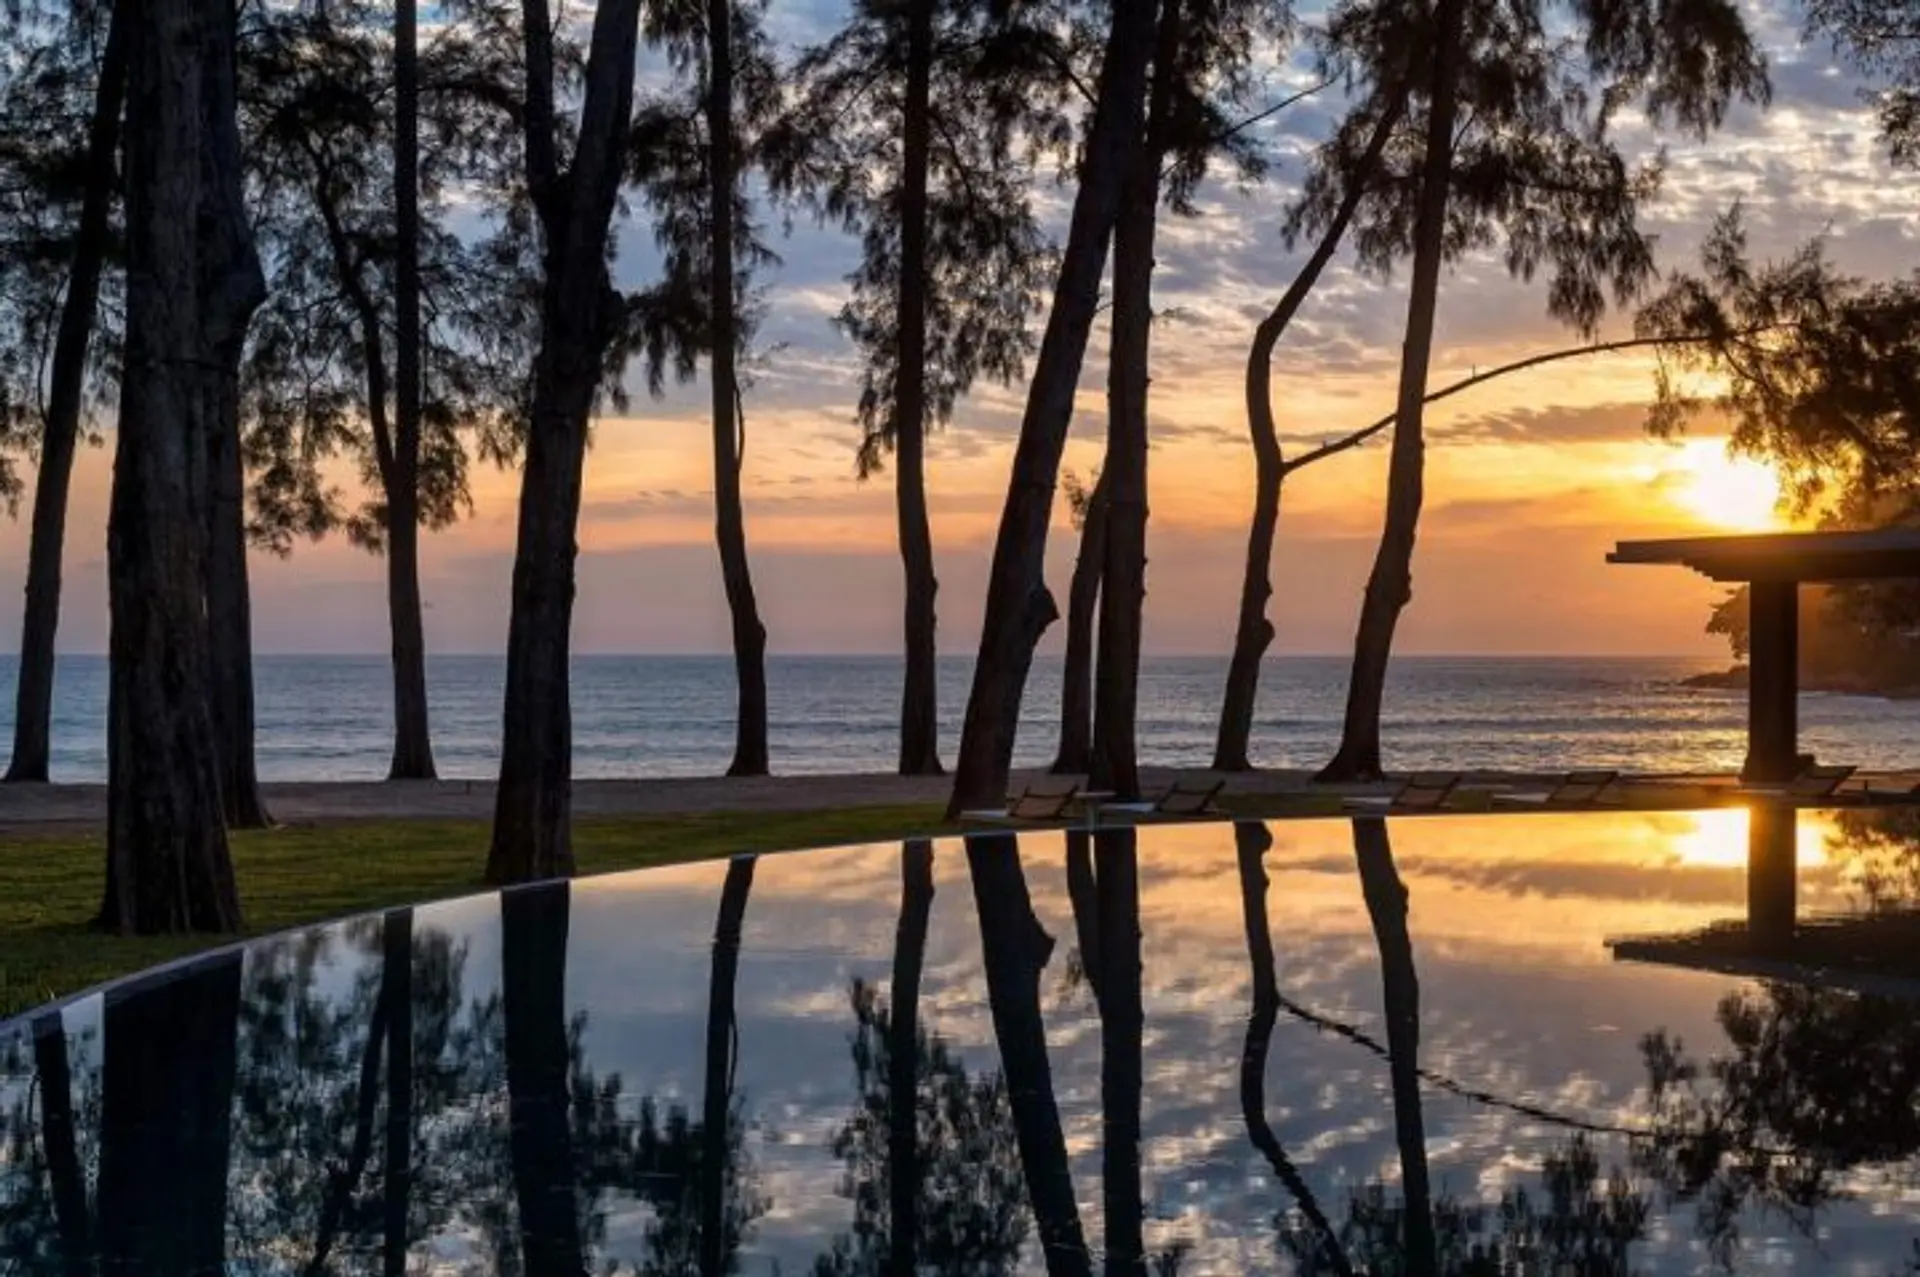 Hotels Articles - Phuket’s new luxury resort